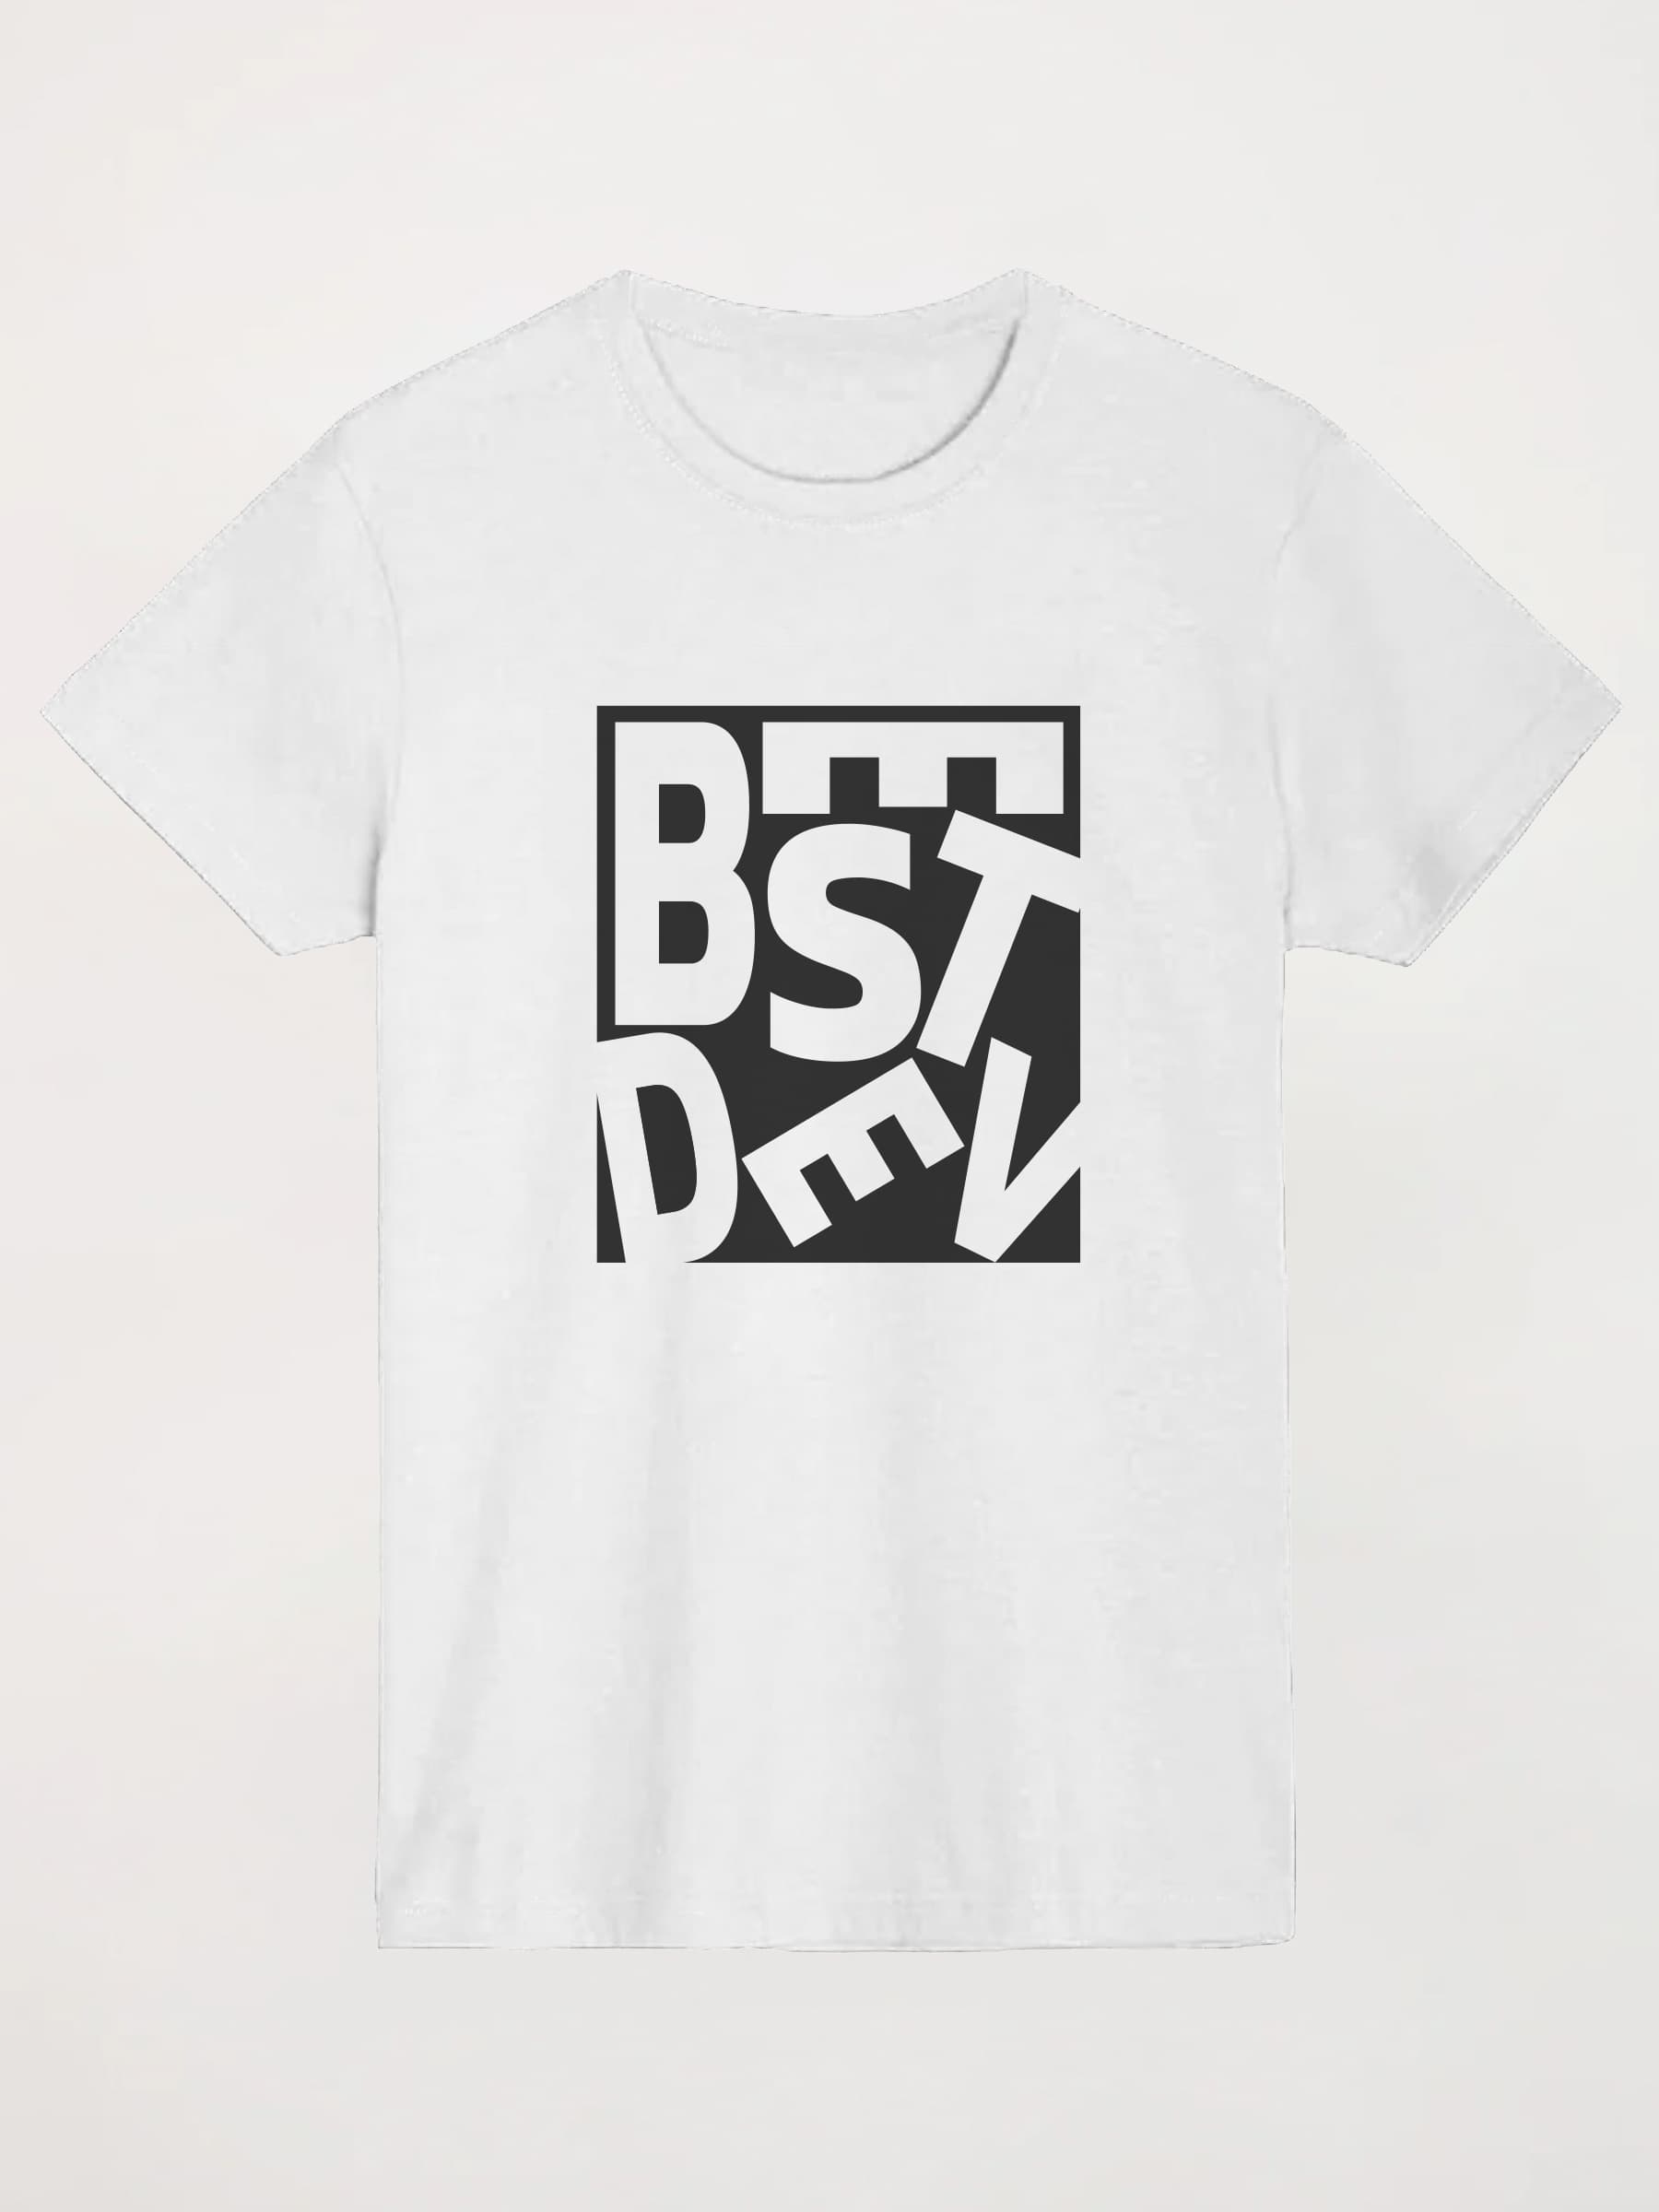 Camiseta Best Dev